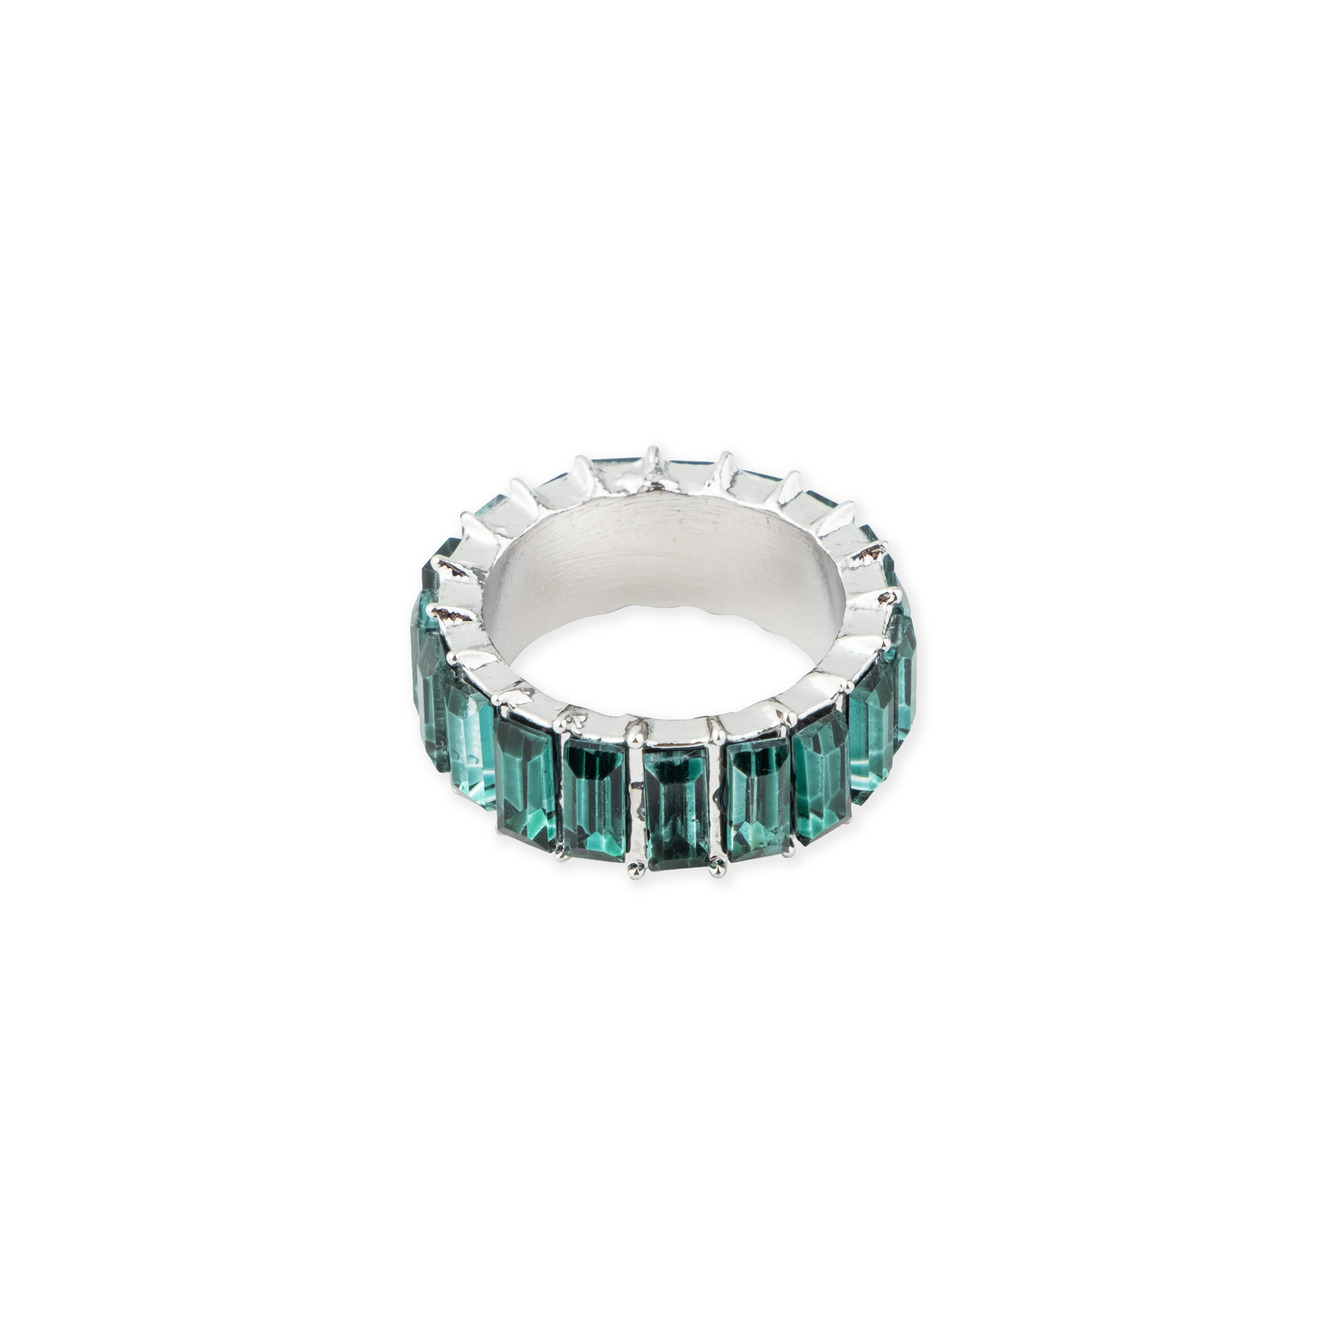 Herald Percy Серебристое кольцо с зелеными кристаллами herald percy серебристое колье с белыми кристаллами